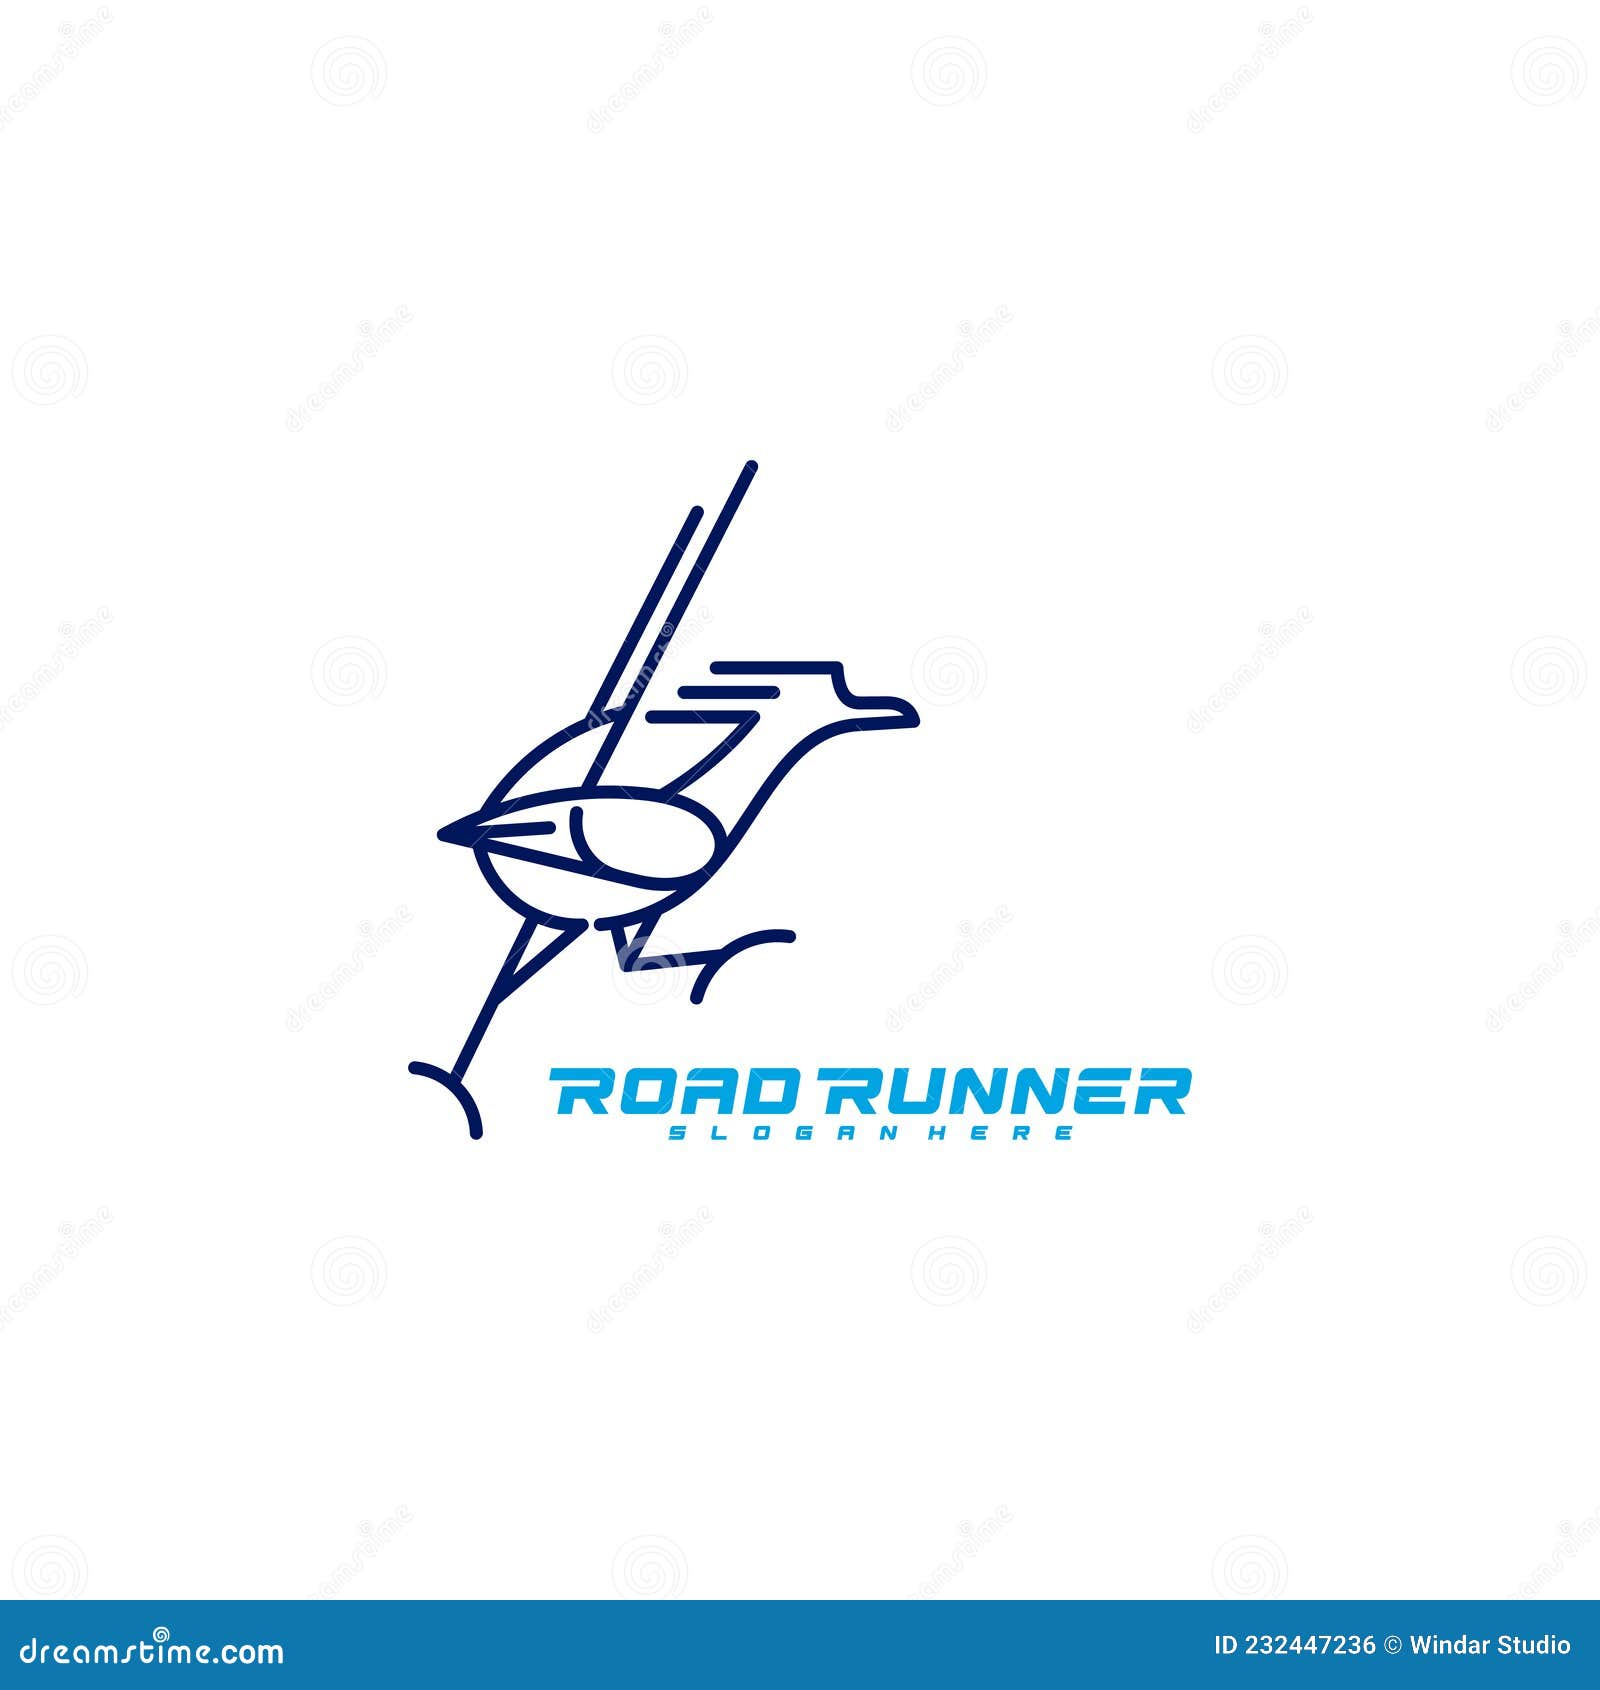 roadrunner bird logo   